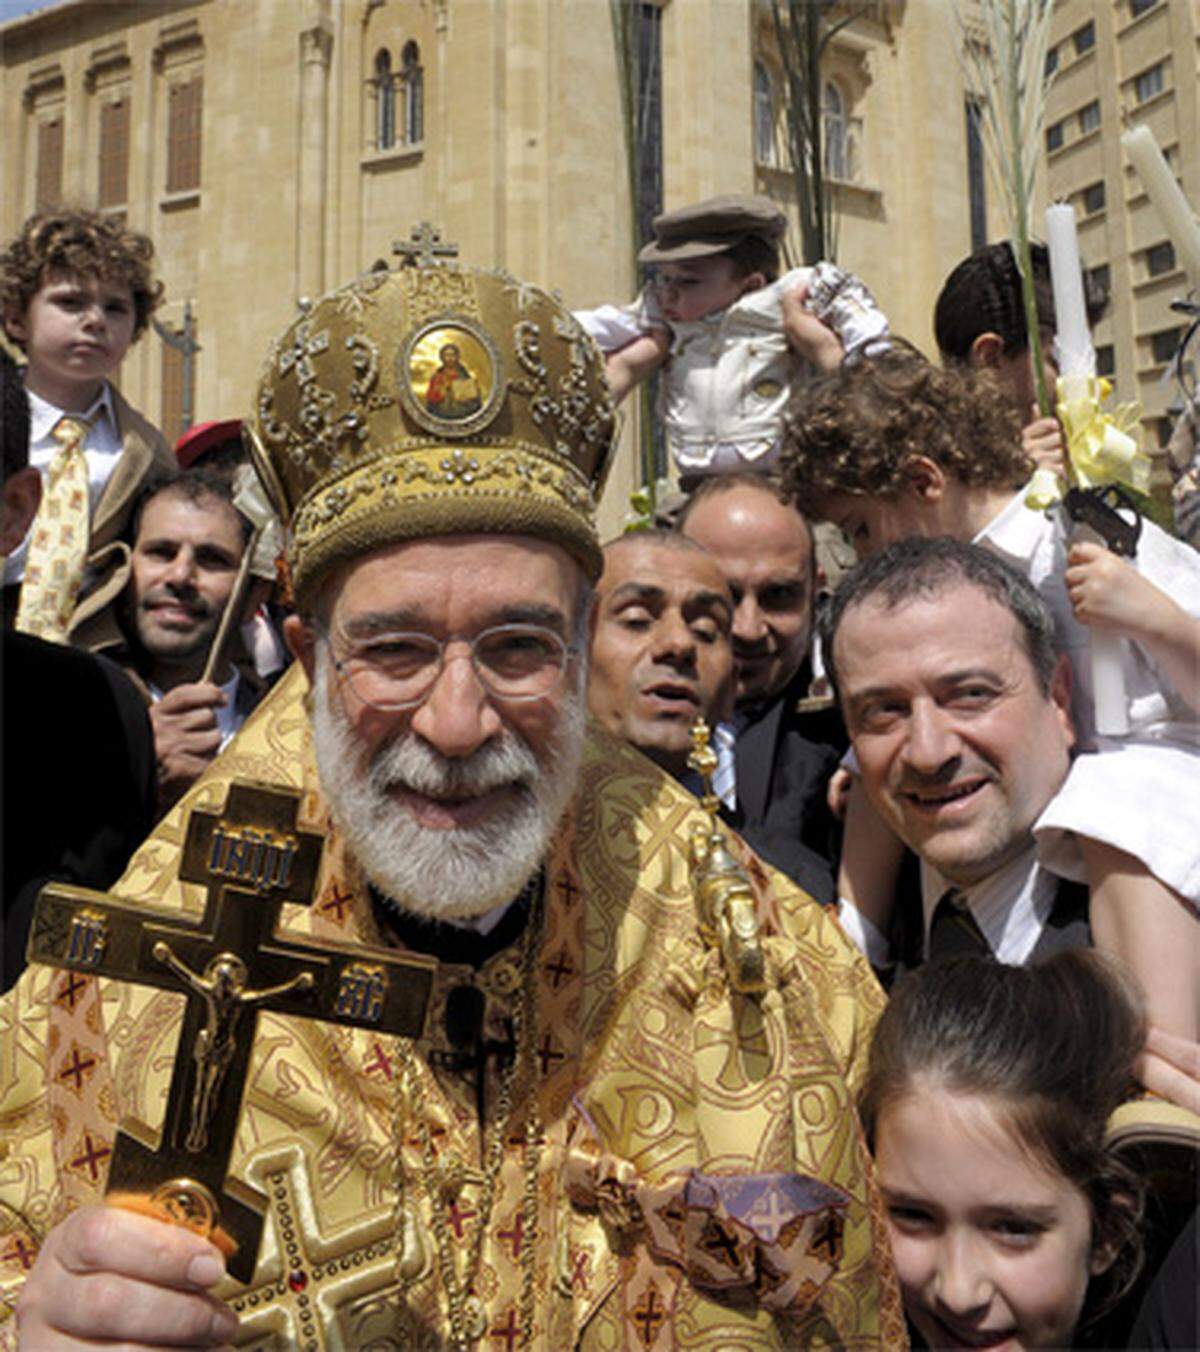 Auch im Nahen Osten feiern die Orthodoxen ihr Palmsonntags-Fest. Ostern findet bei ihnen eine Woche später statt.